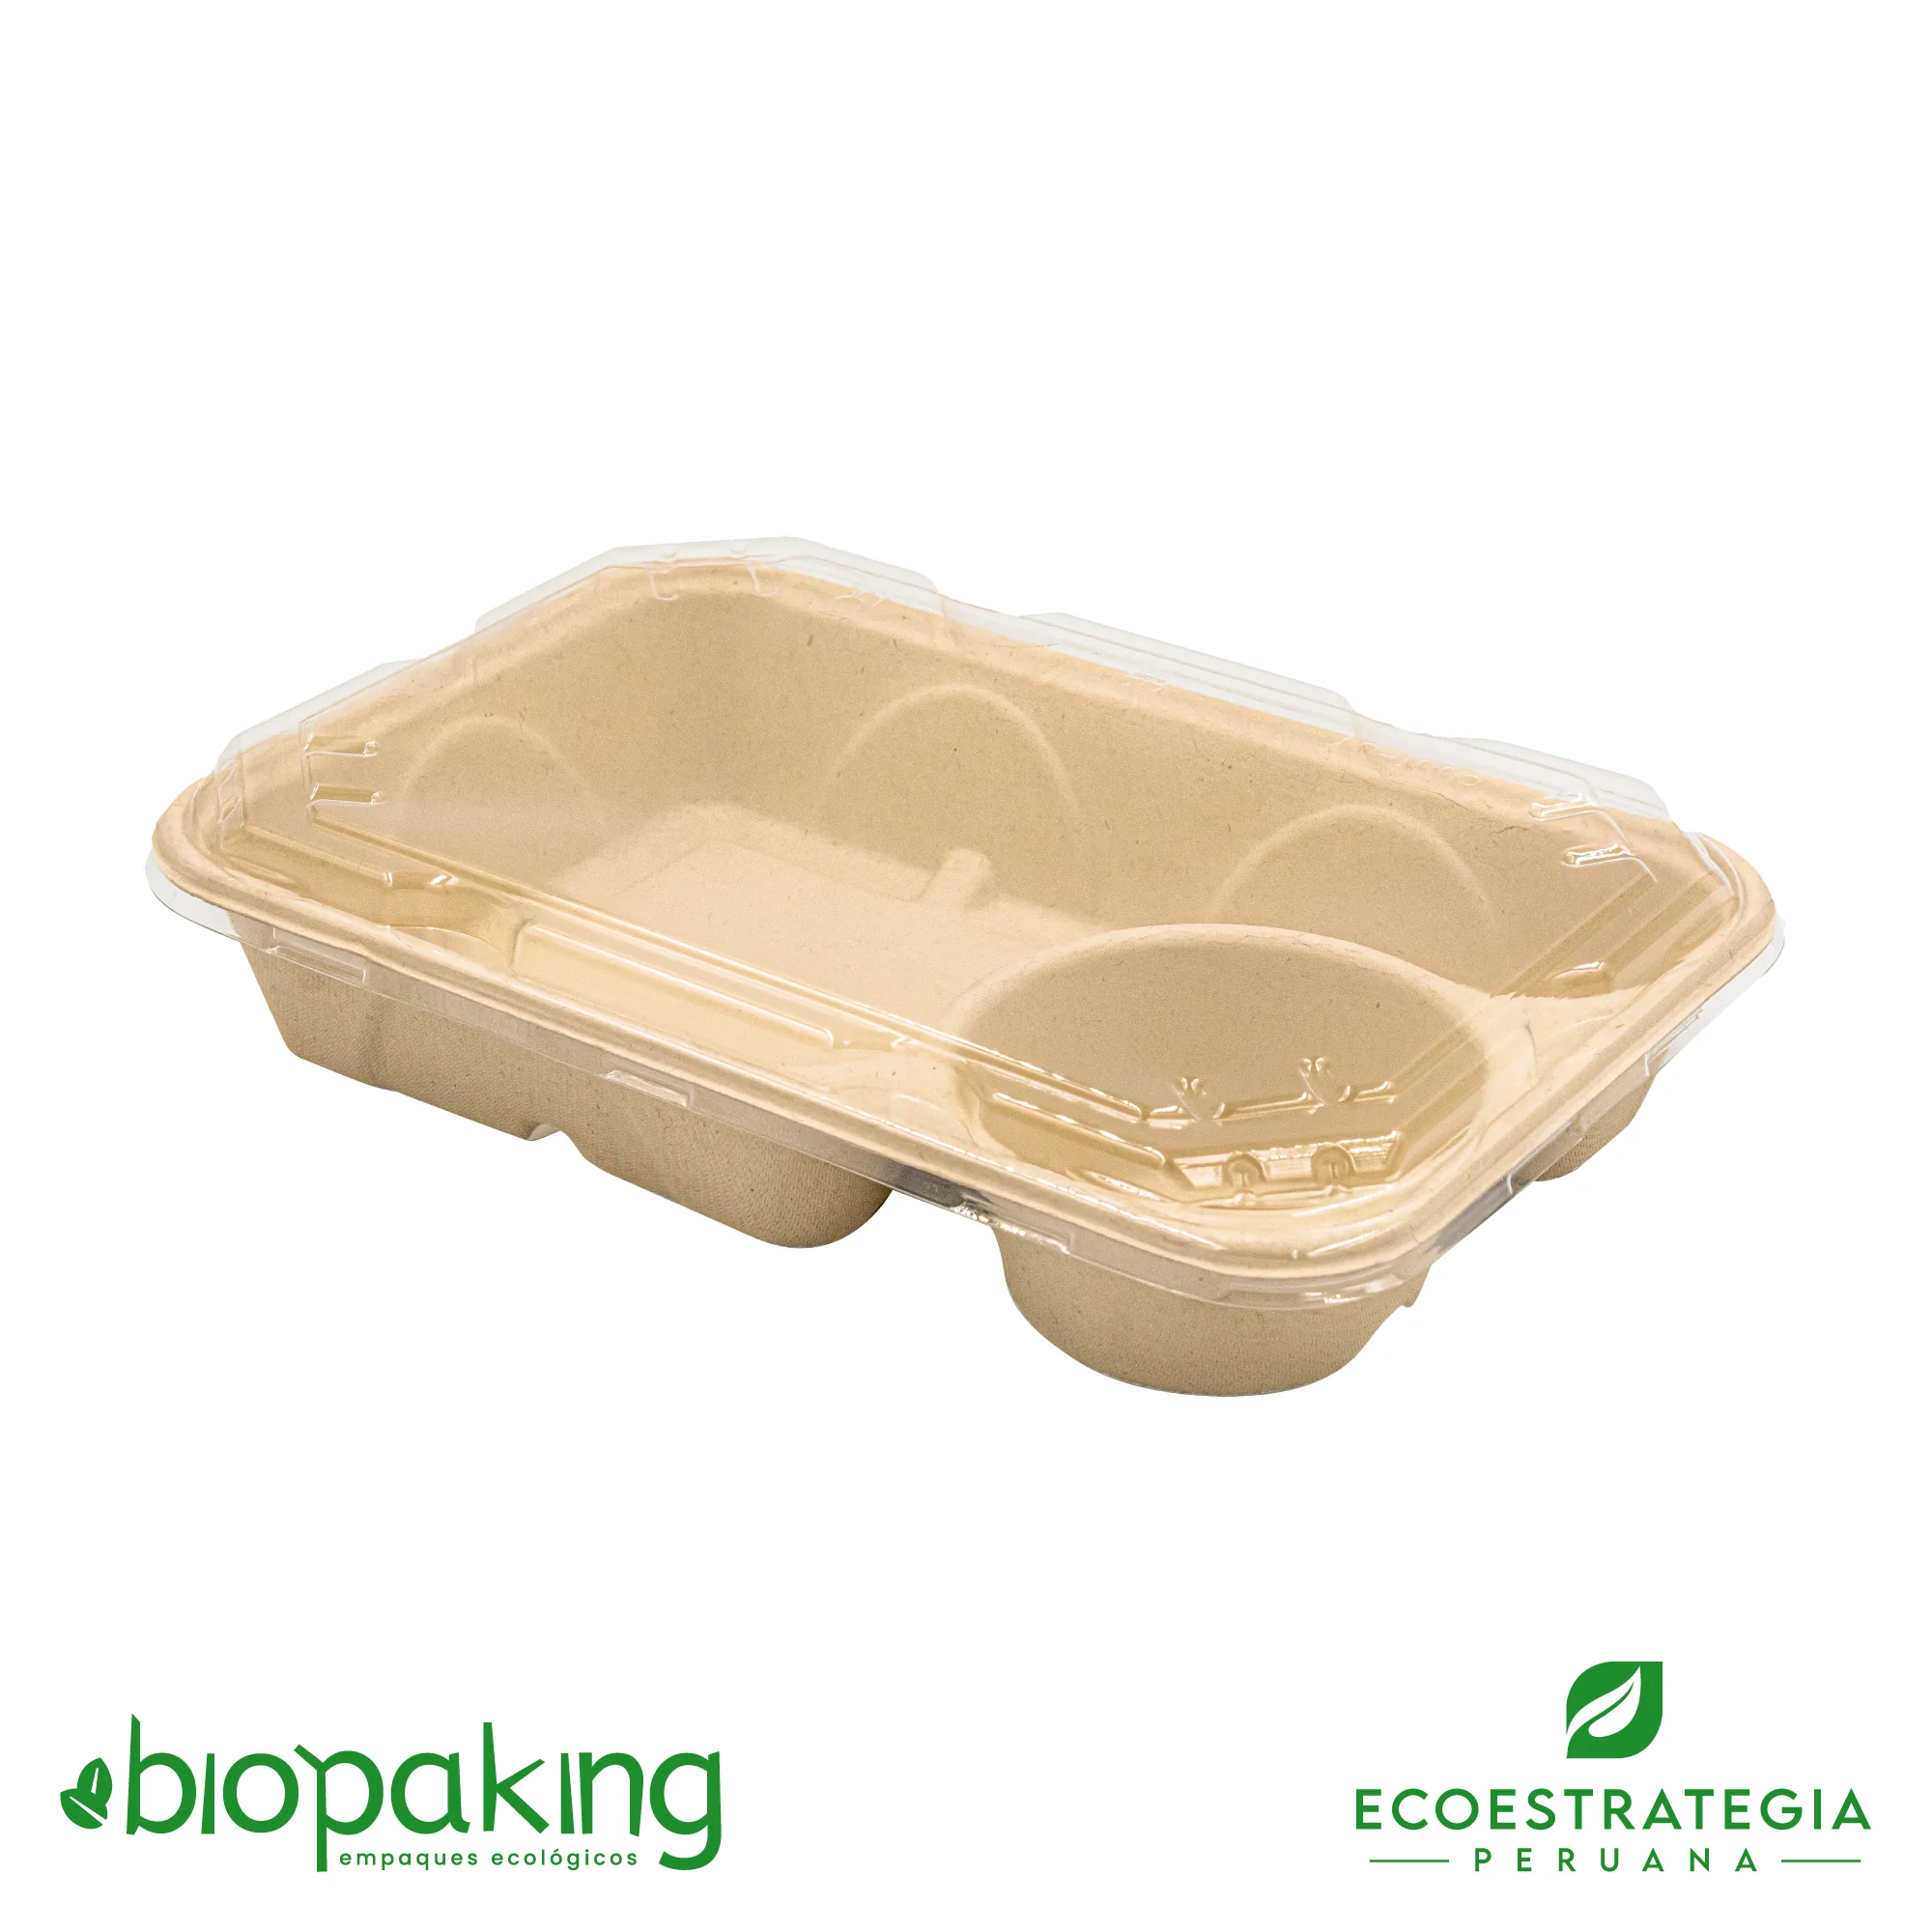 Esta bandeja biodegradable 2dv está hecho de fibra de trigo y pesa 51gr. Envases descartables con gramaje ideal, cotiza tus platos, empaques y tapers ecológicos